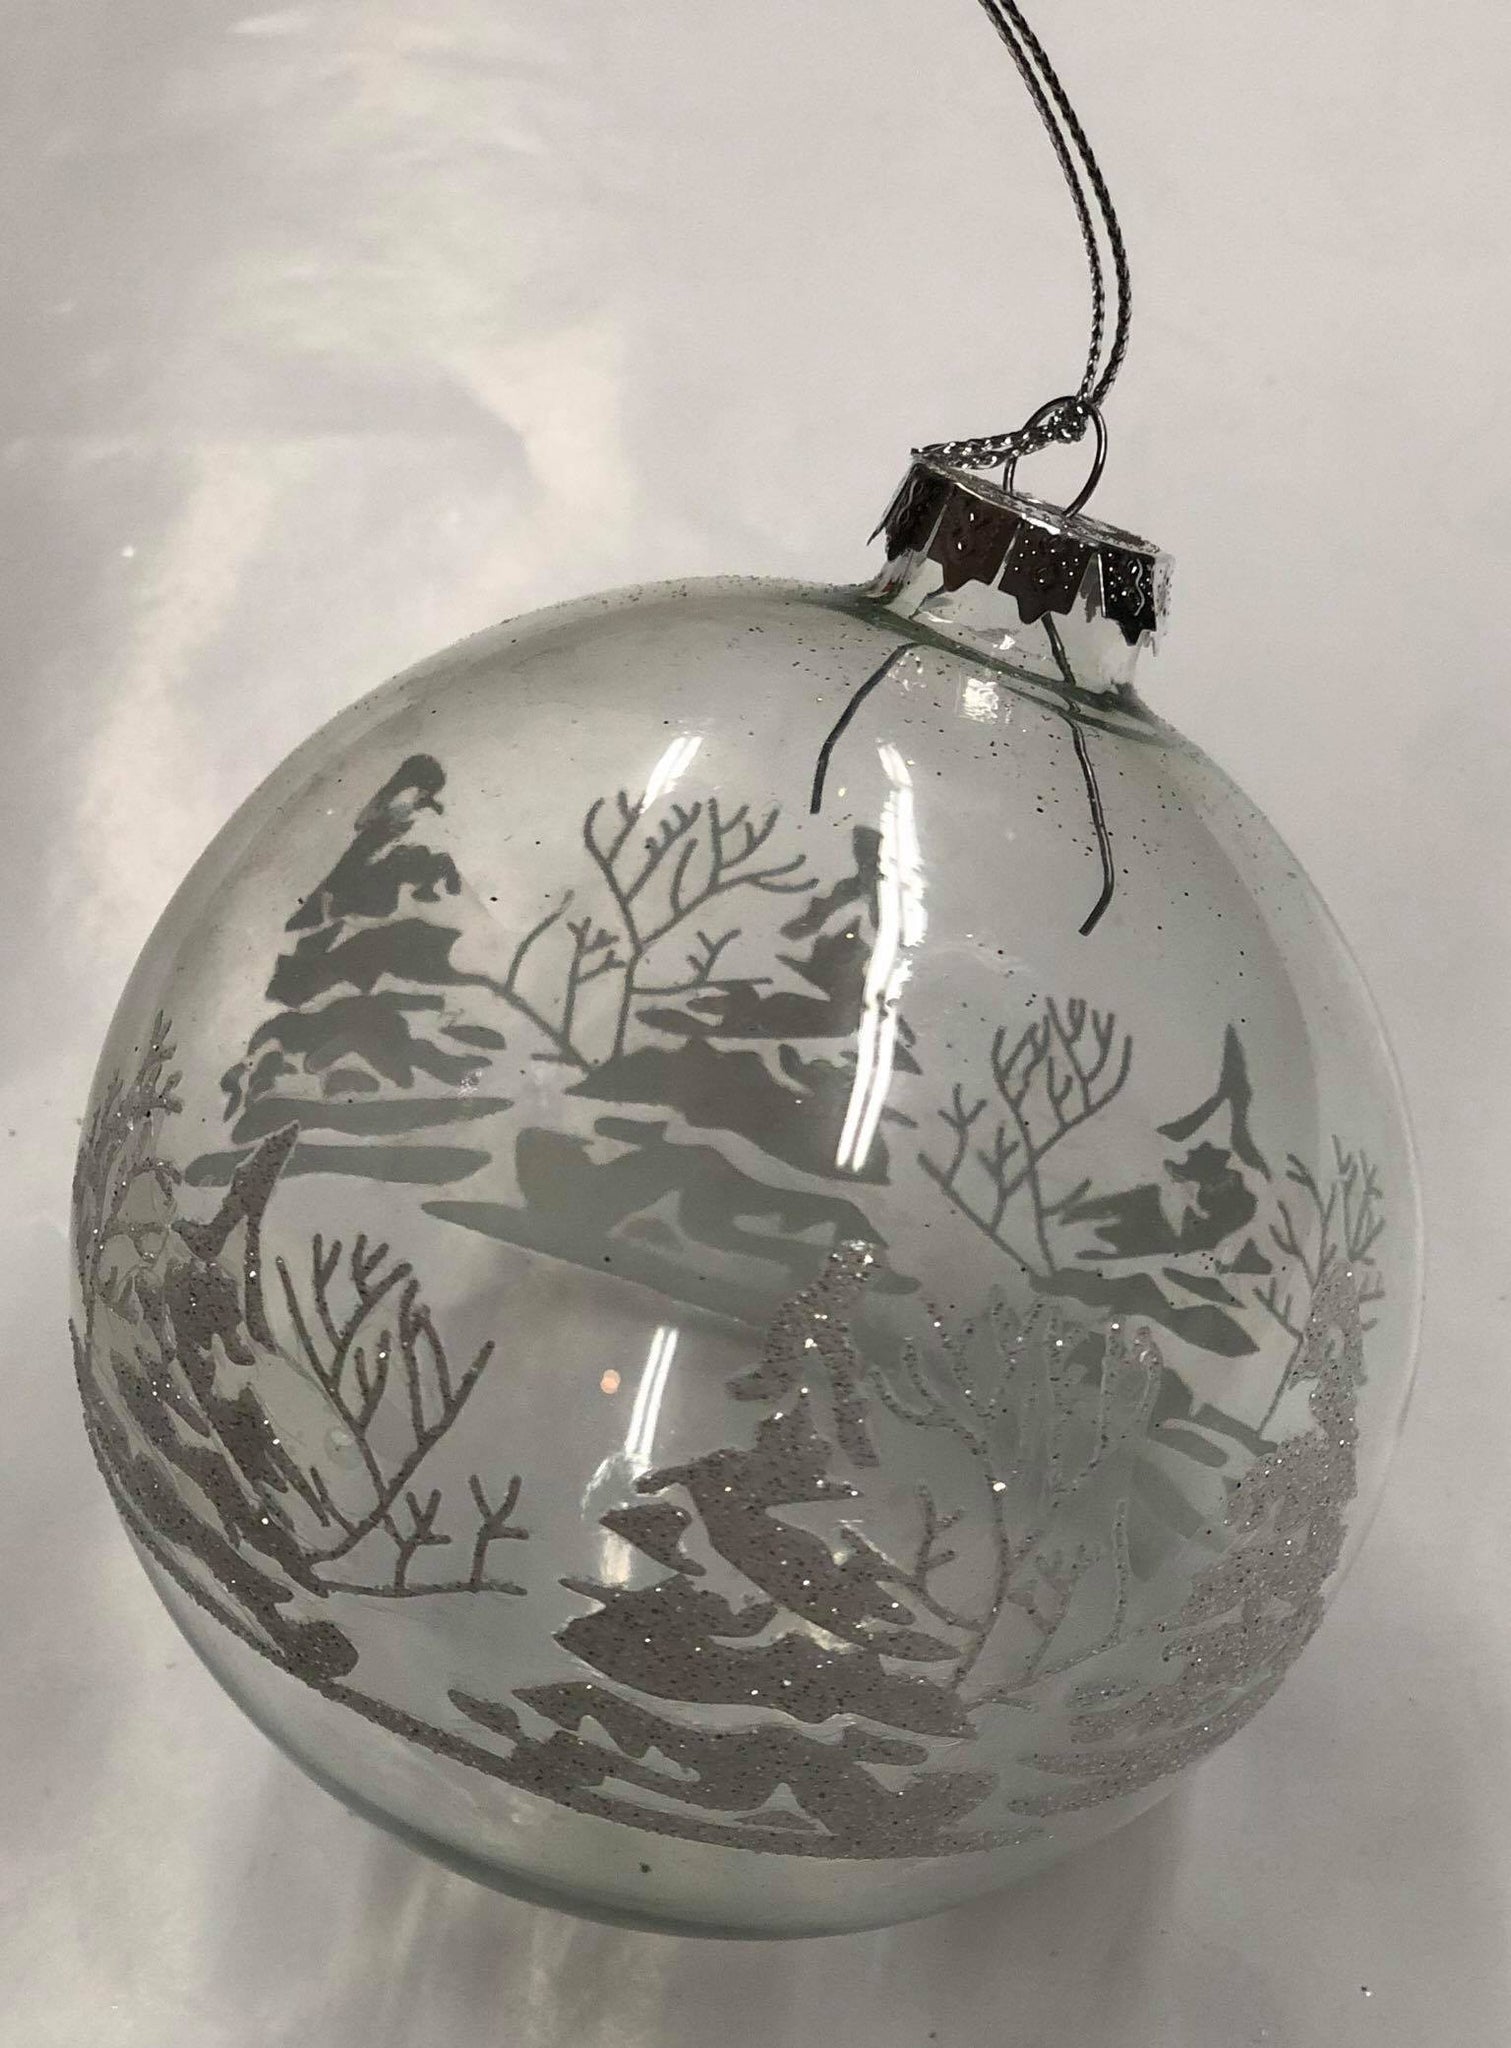 Glass tree ornament "Winter scene"